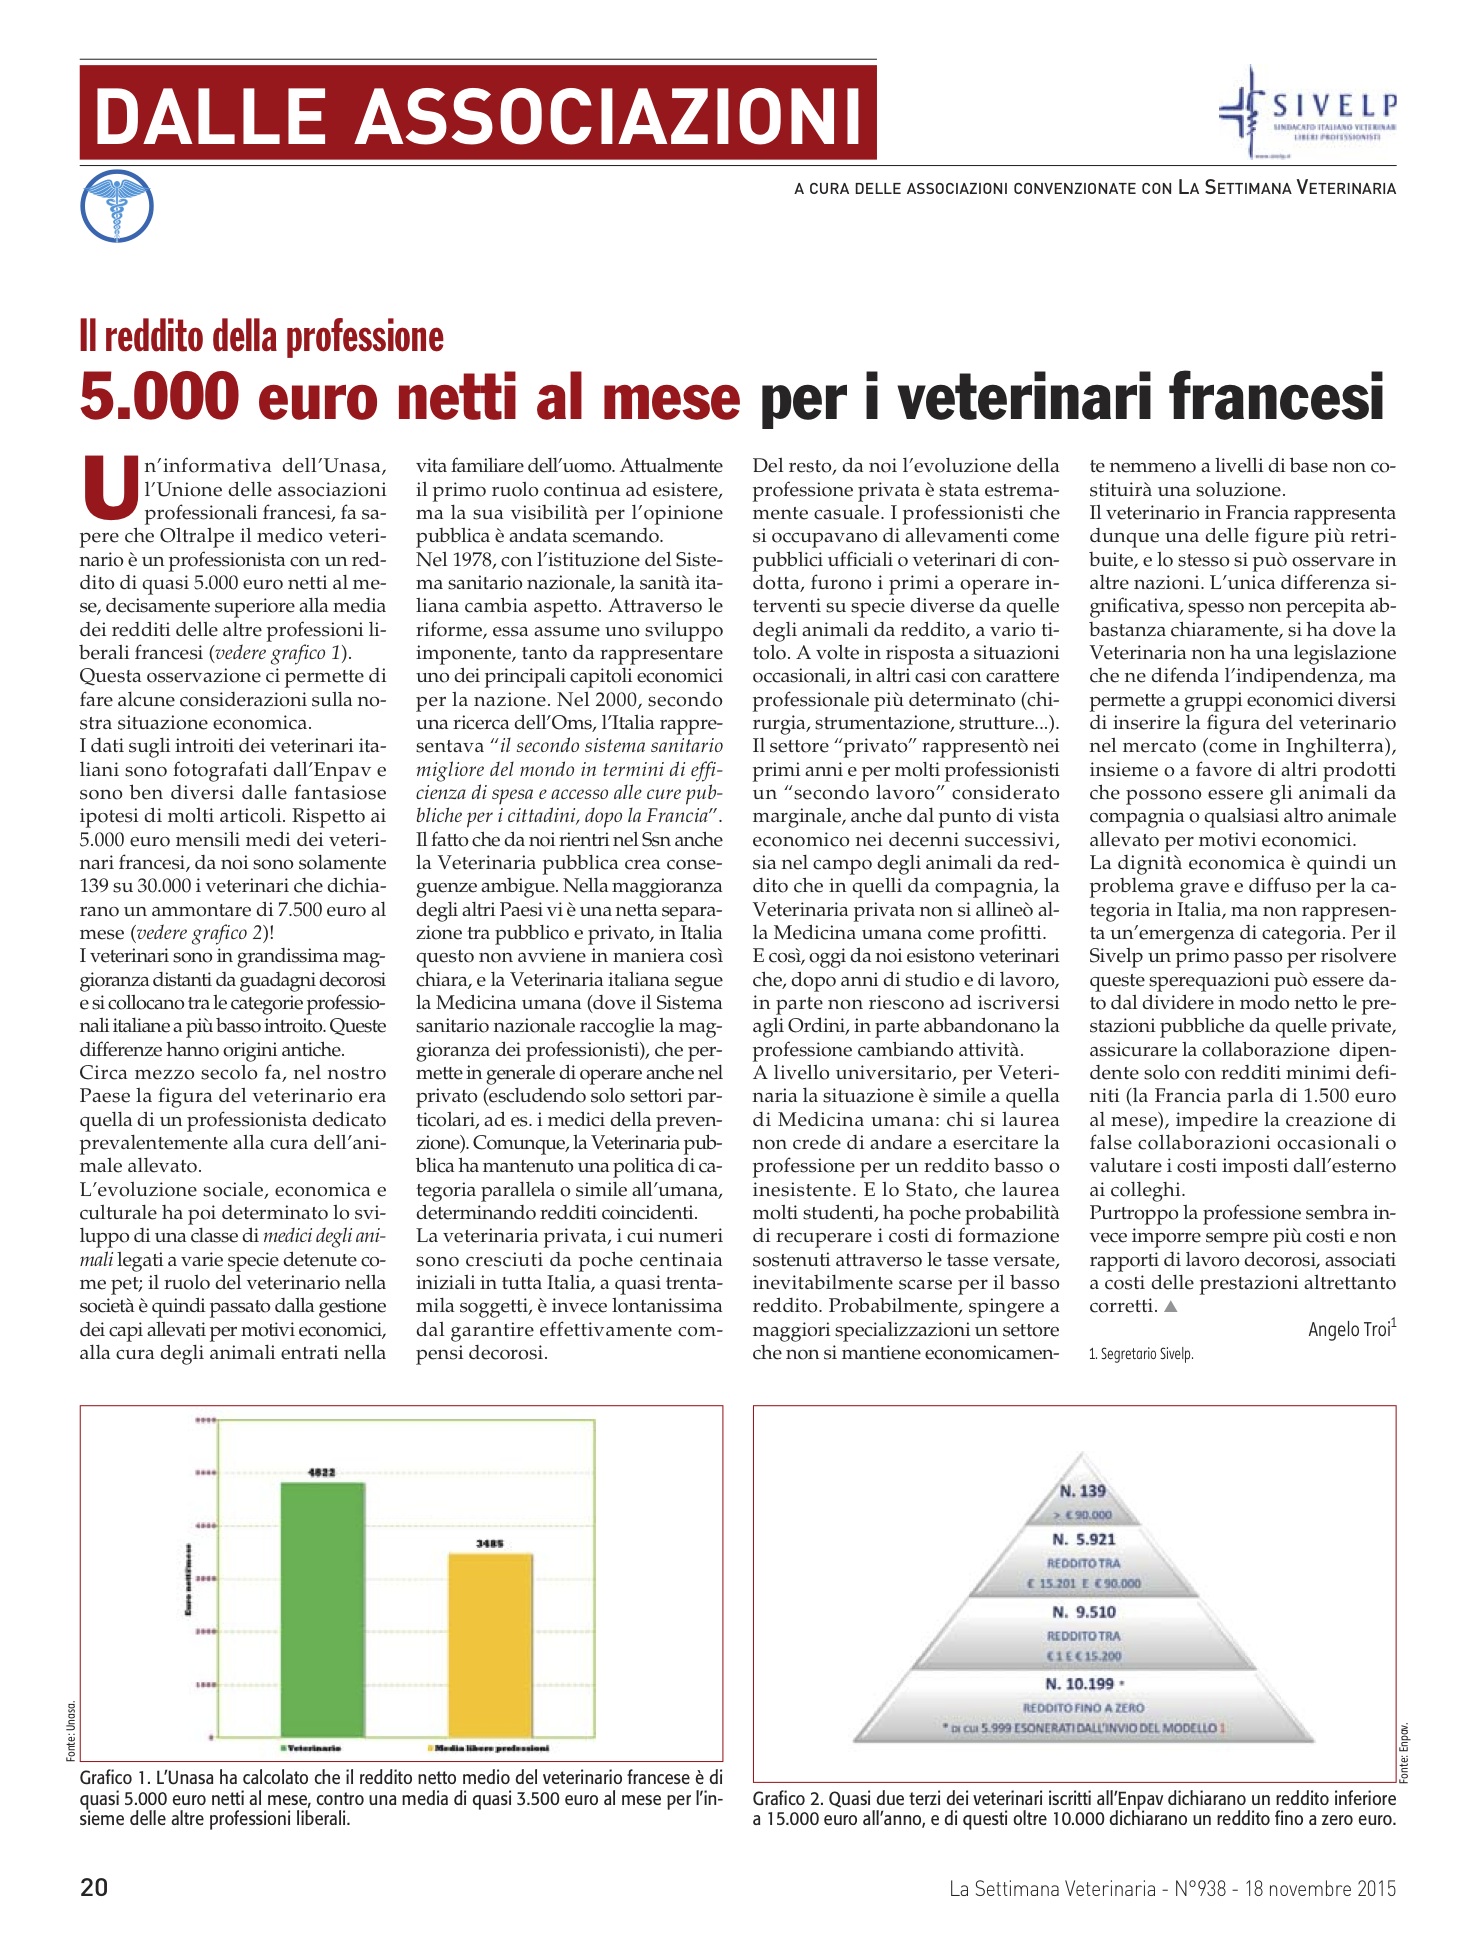 5.000 euro netti al mese per i veterinari francesi – La Settimana Veterinaria